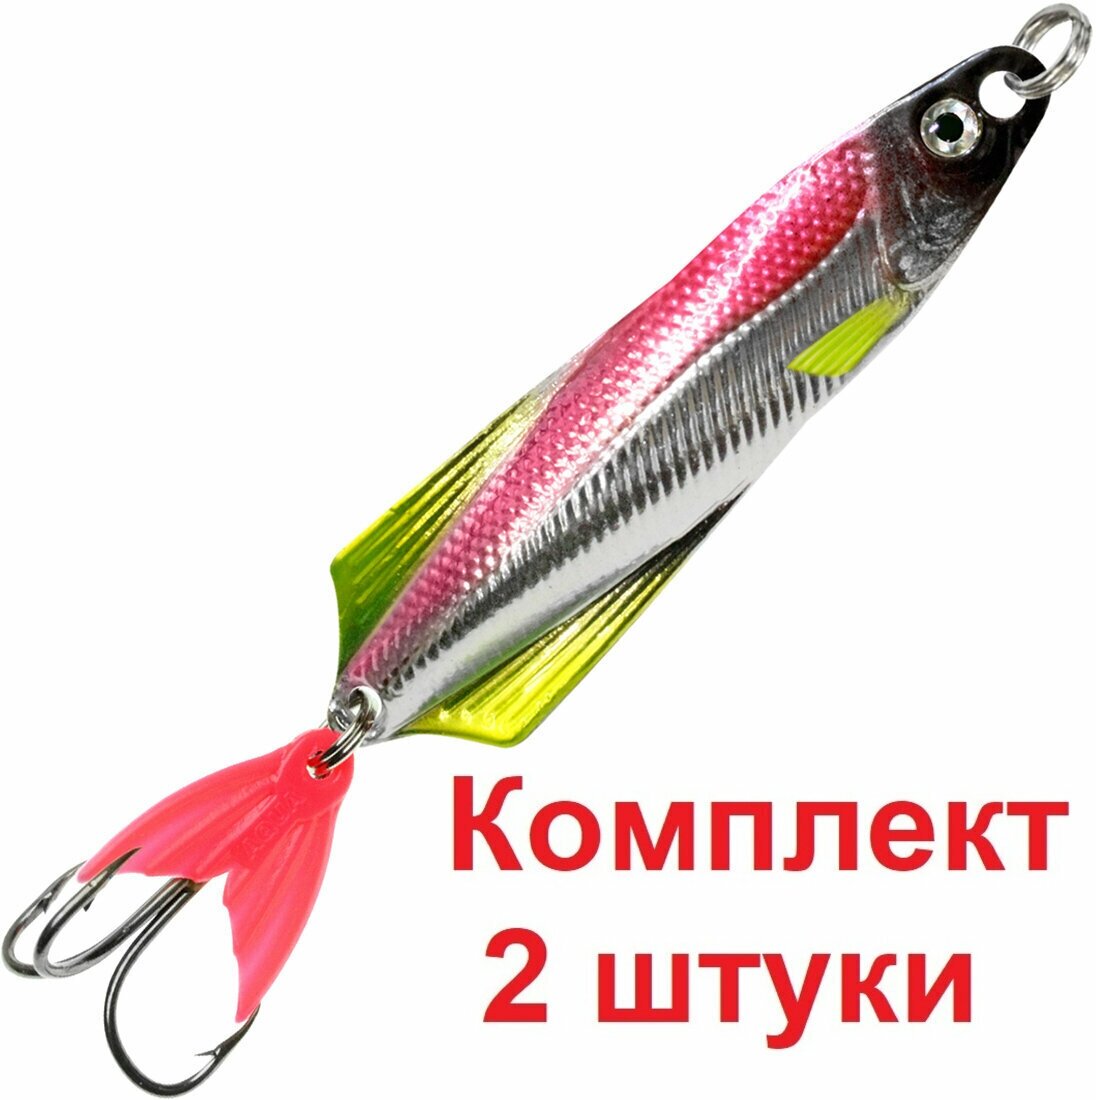 Блесна для рыбалки AQUA глюк 17,0g цвет 03 (серебро, желтый флюрик, красный металлик), 2 штуки в комплекте